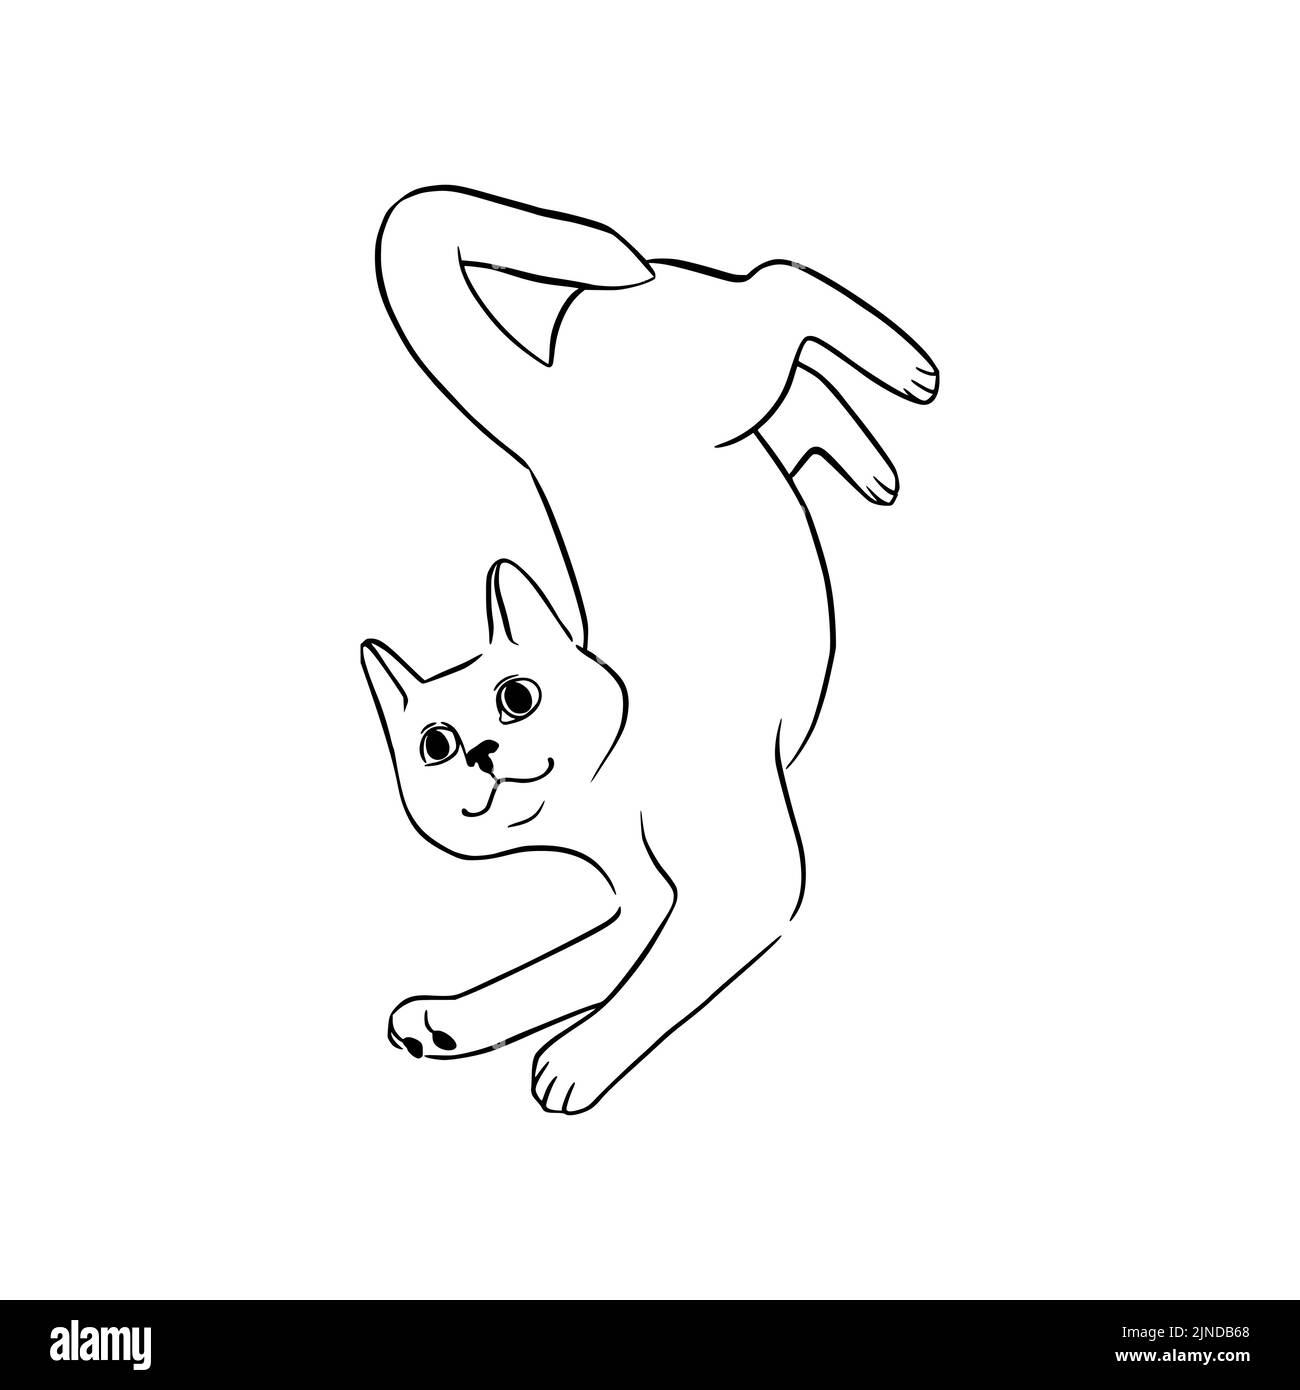 Esquisse noire de chat couché. Chat joueur dans un style doodle. Illustration vectorielle mignonne isolée sur fond blanc Illustration de Vecteur